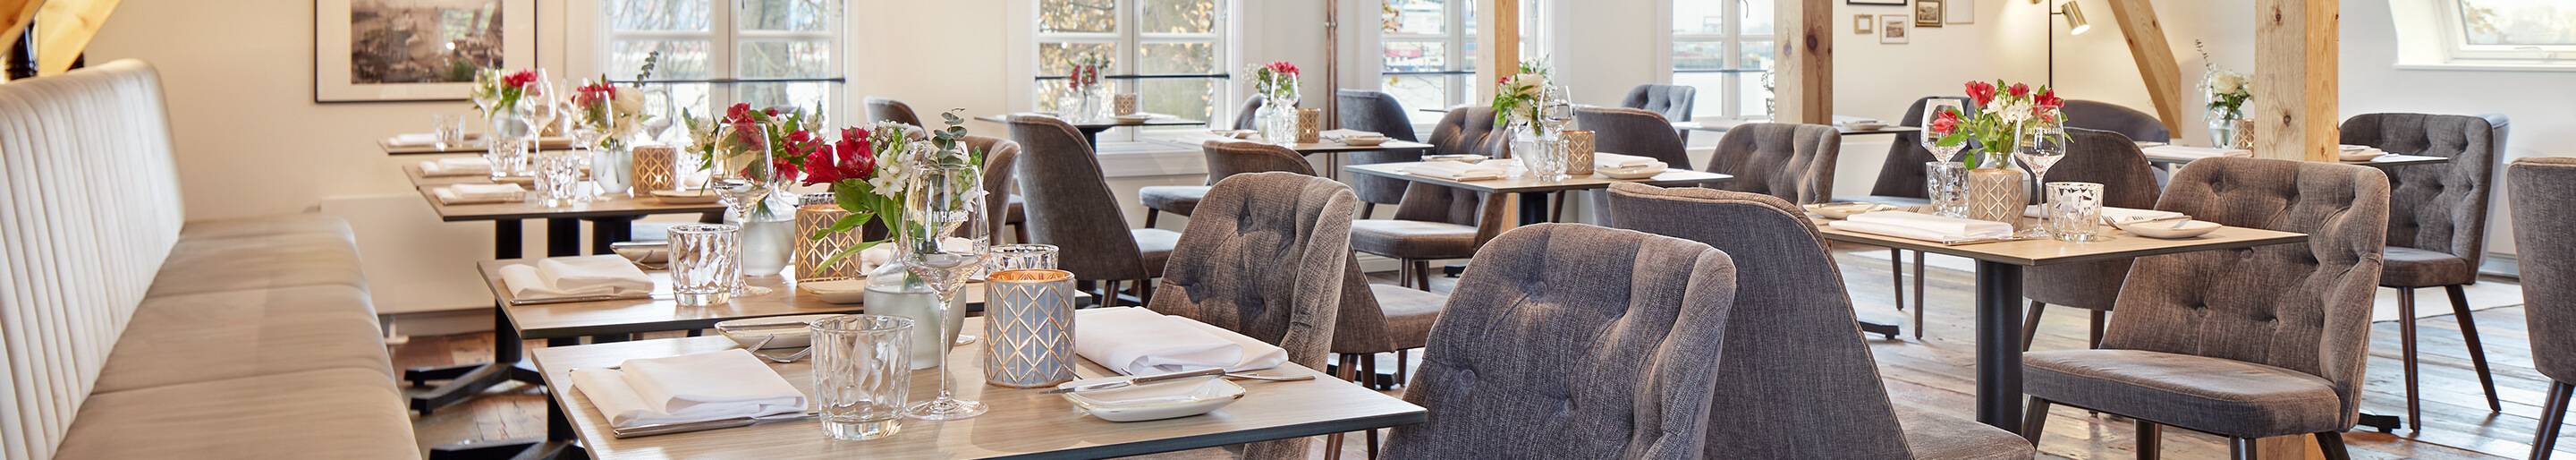 Indoor-Möbel für Ihre Gastronomie und Hotellerie